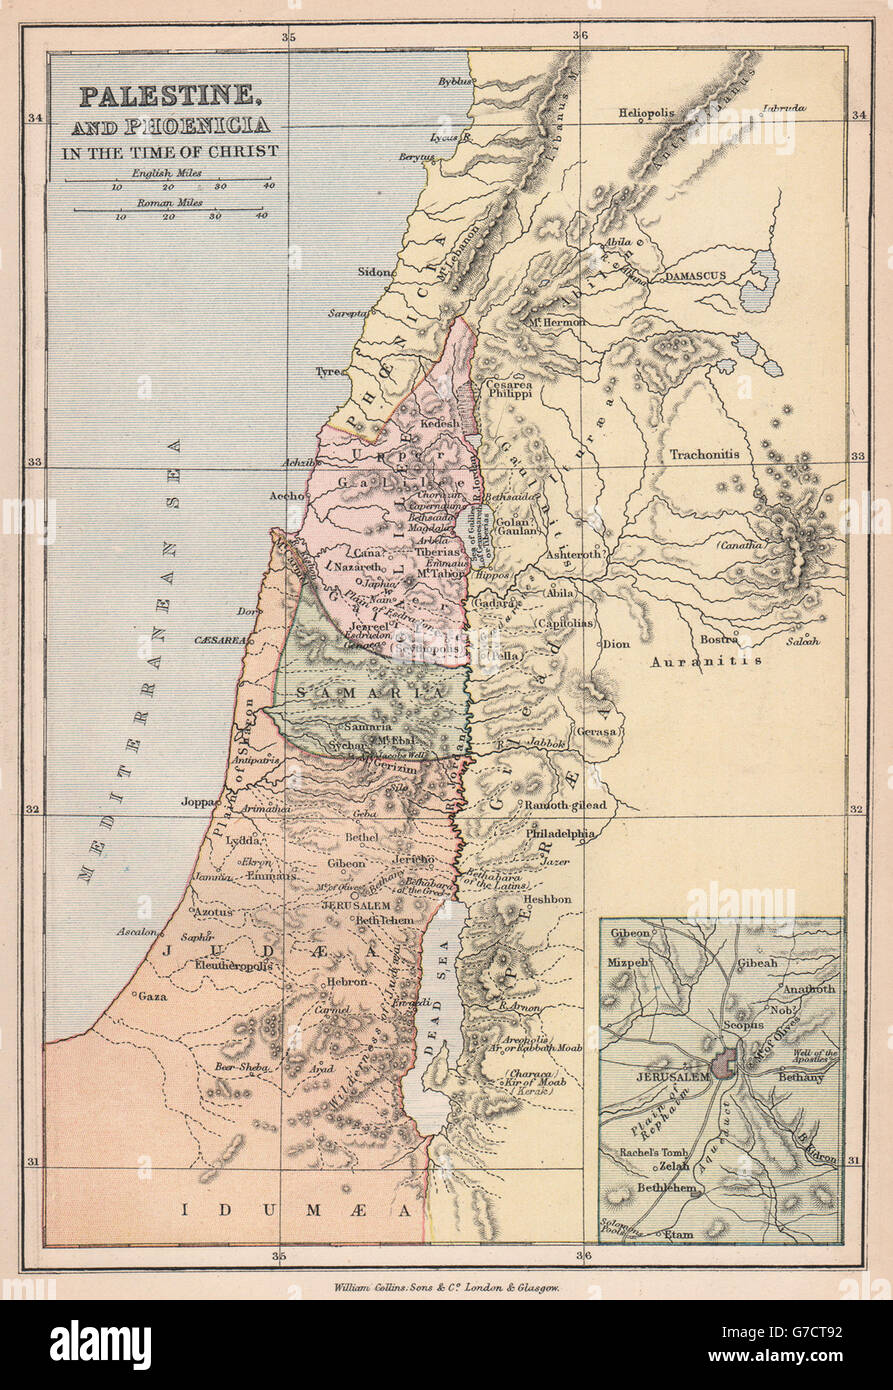 Palästina & Phoenicia in der Zeit von Christus ". Judäa Gallilee Samaria, 1878-Karte Stockfoto